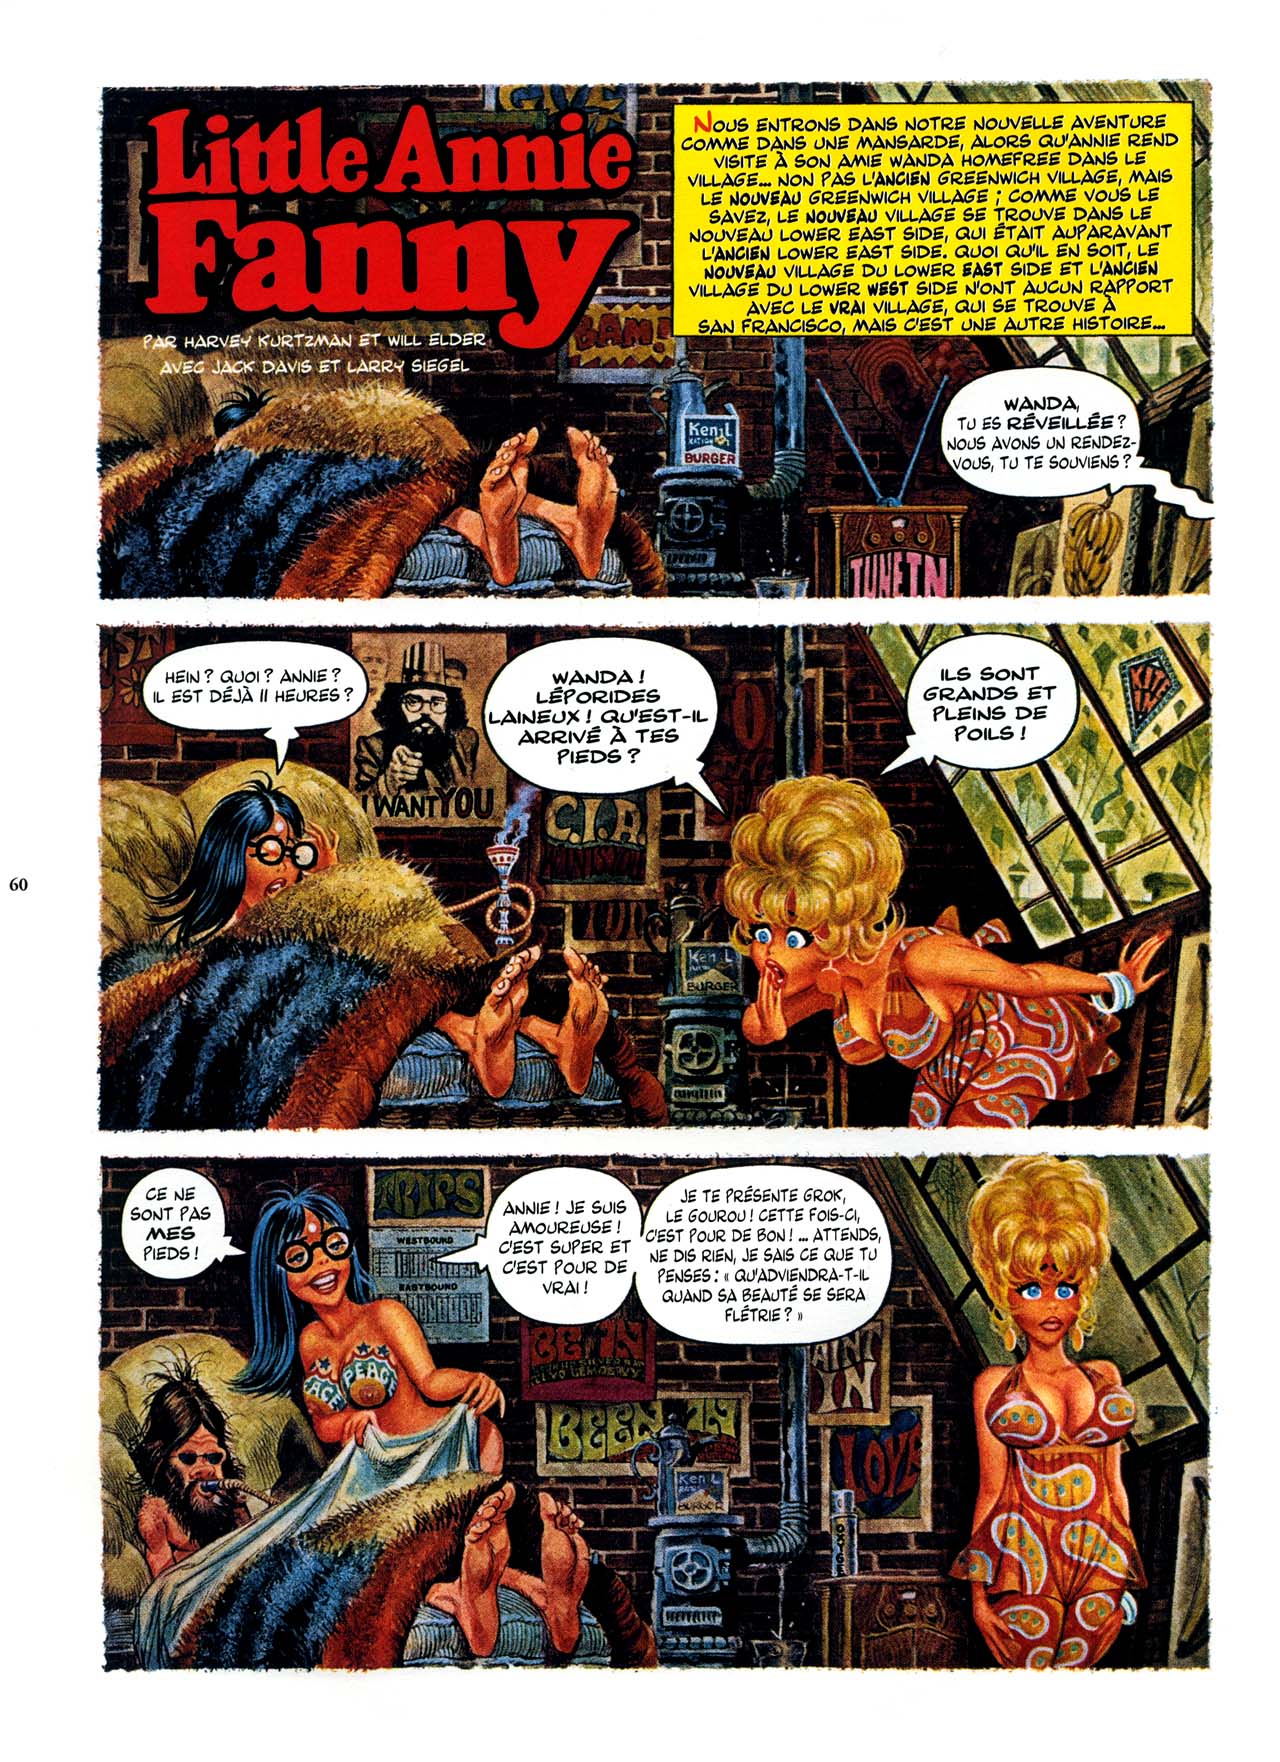 Playboys Little Annie Fanny Vol. 2 - 1965-1970 numero d'image 60